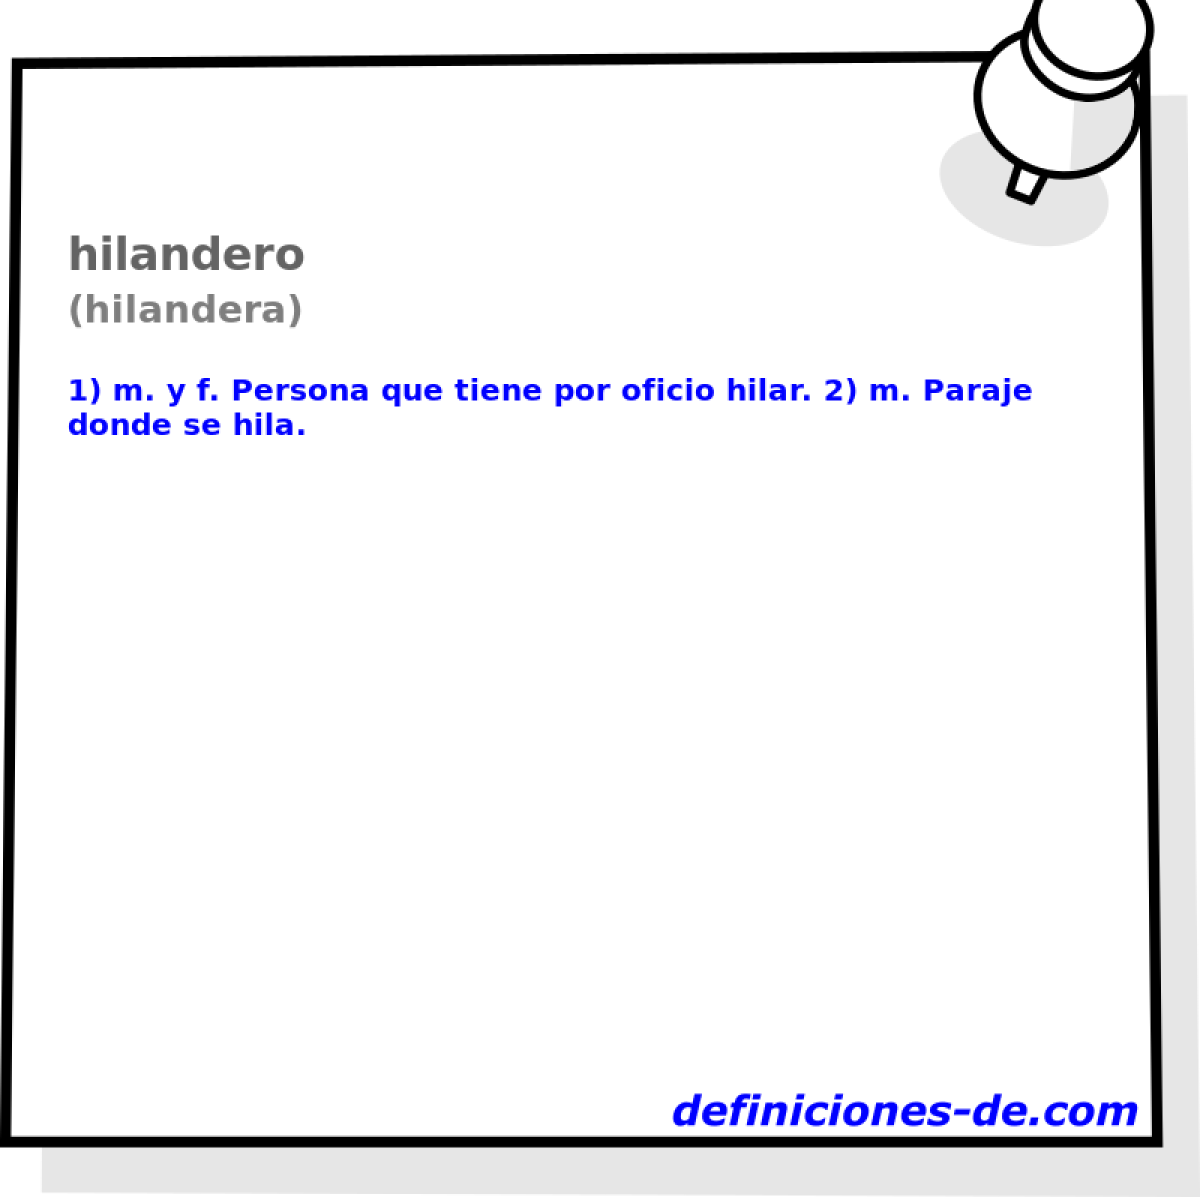 hilandero (hilandera)